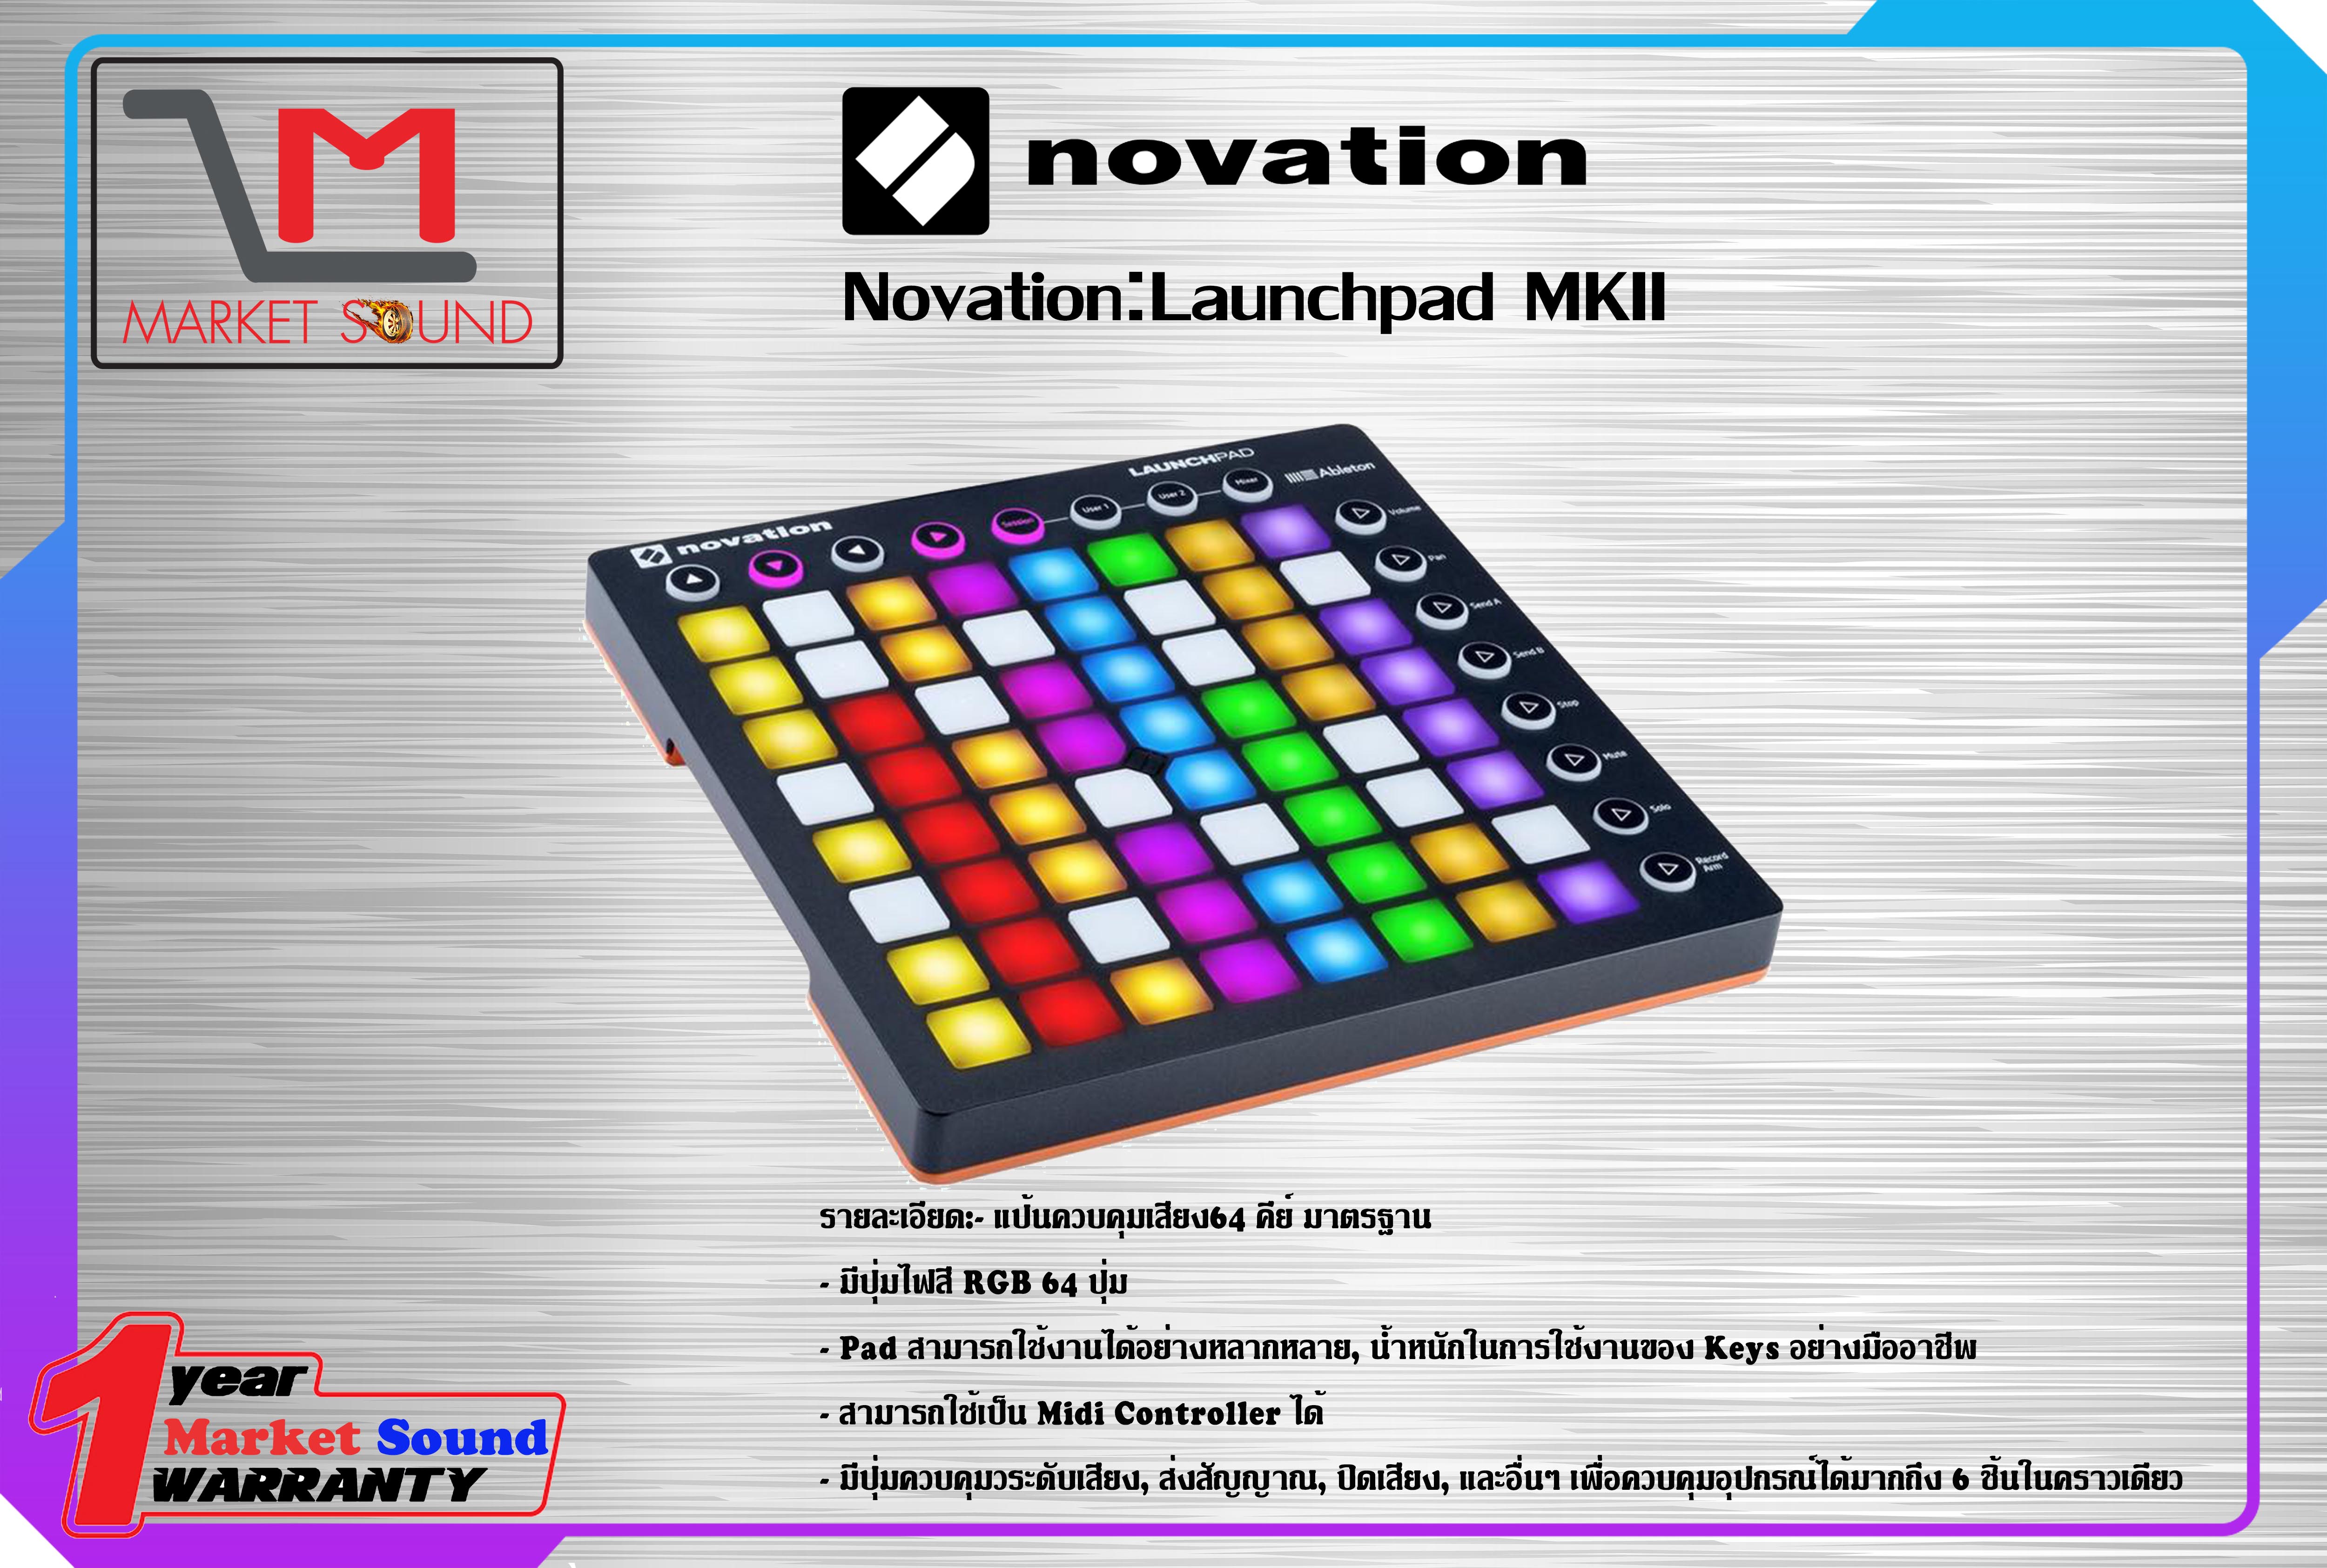 เครื่องดนตรี เครื่องเล่นดนตรี บันทึกเสียง ยี่ห้อ Novation :รุ่น Launchpad MKII